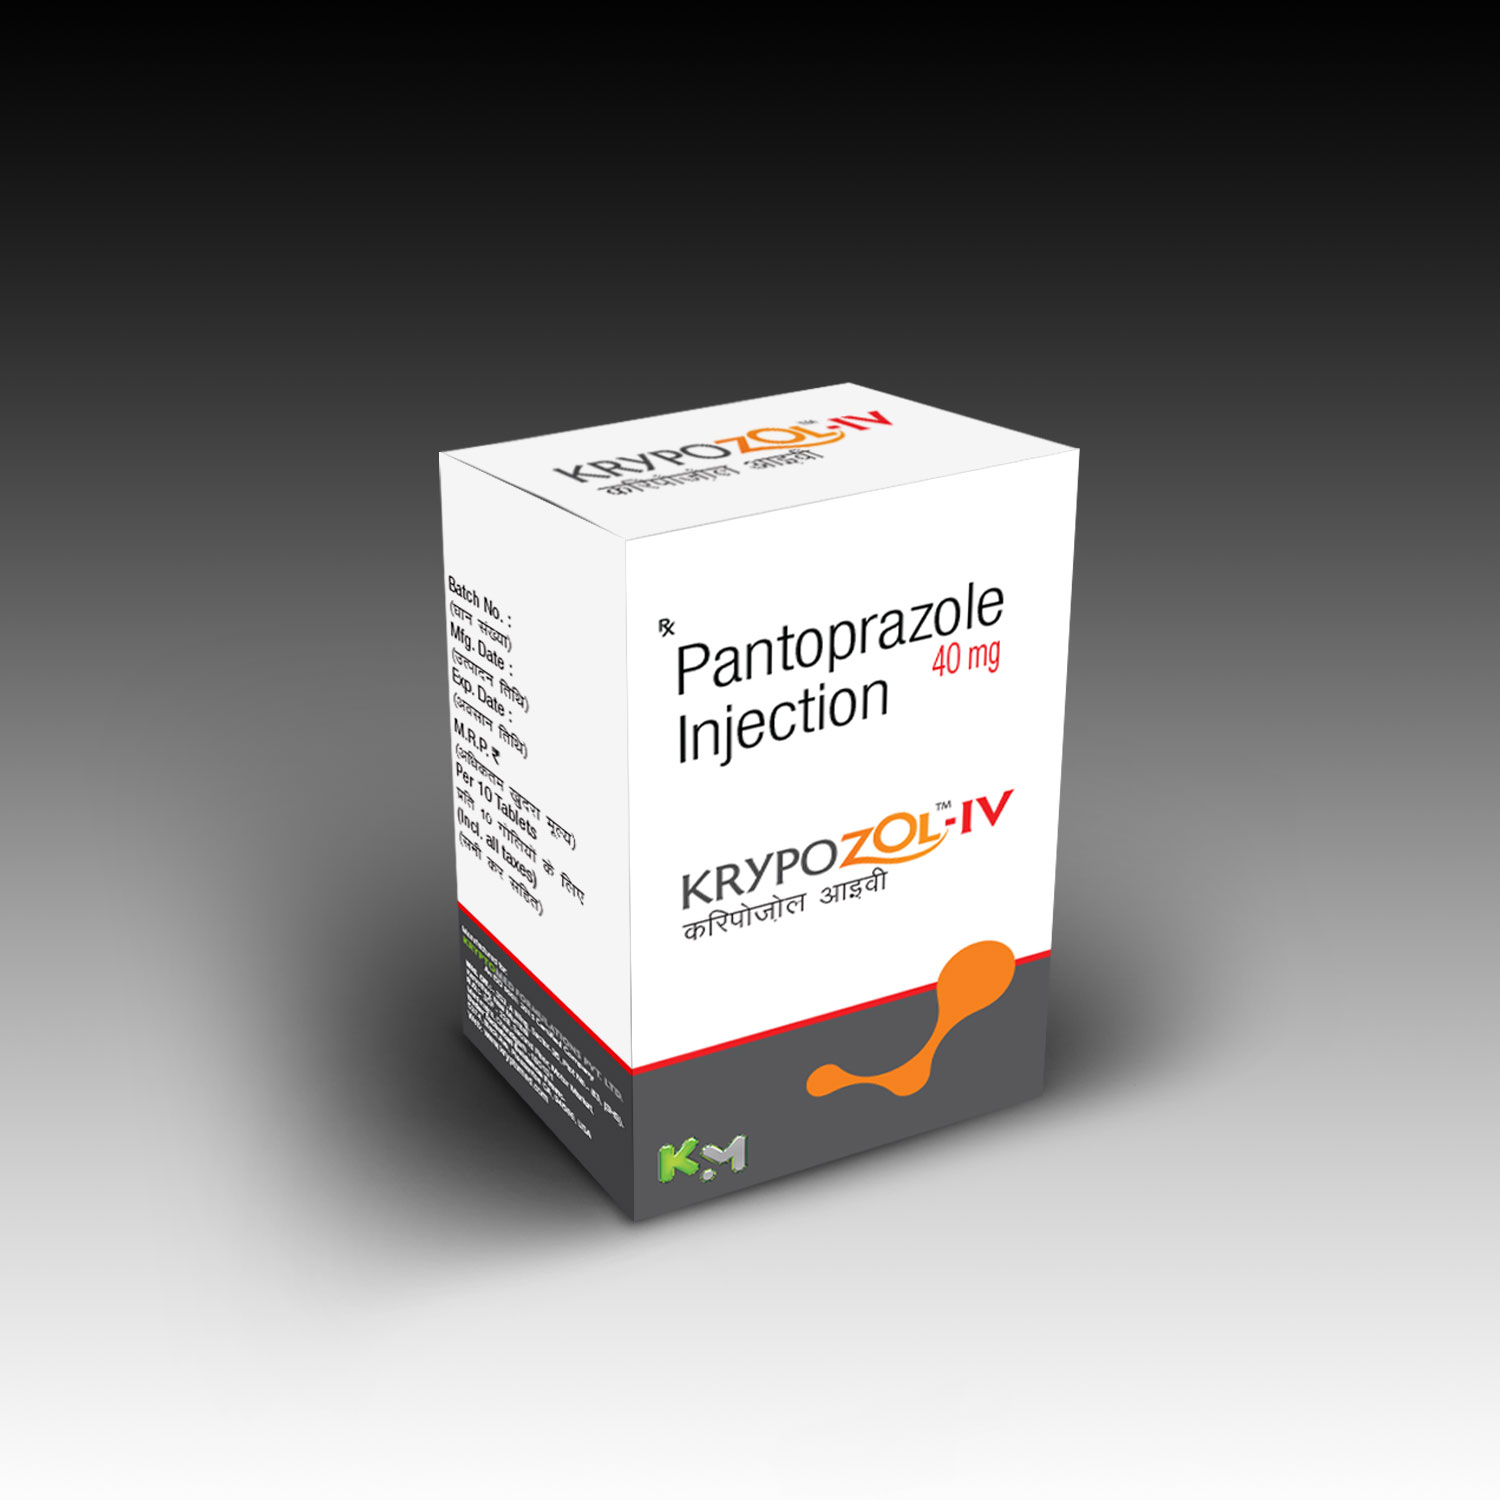 Krypozol-IV